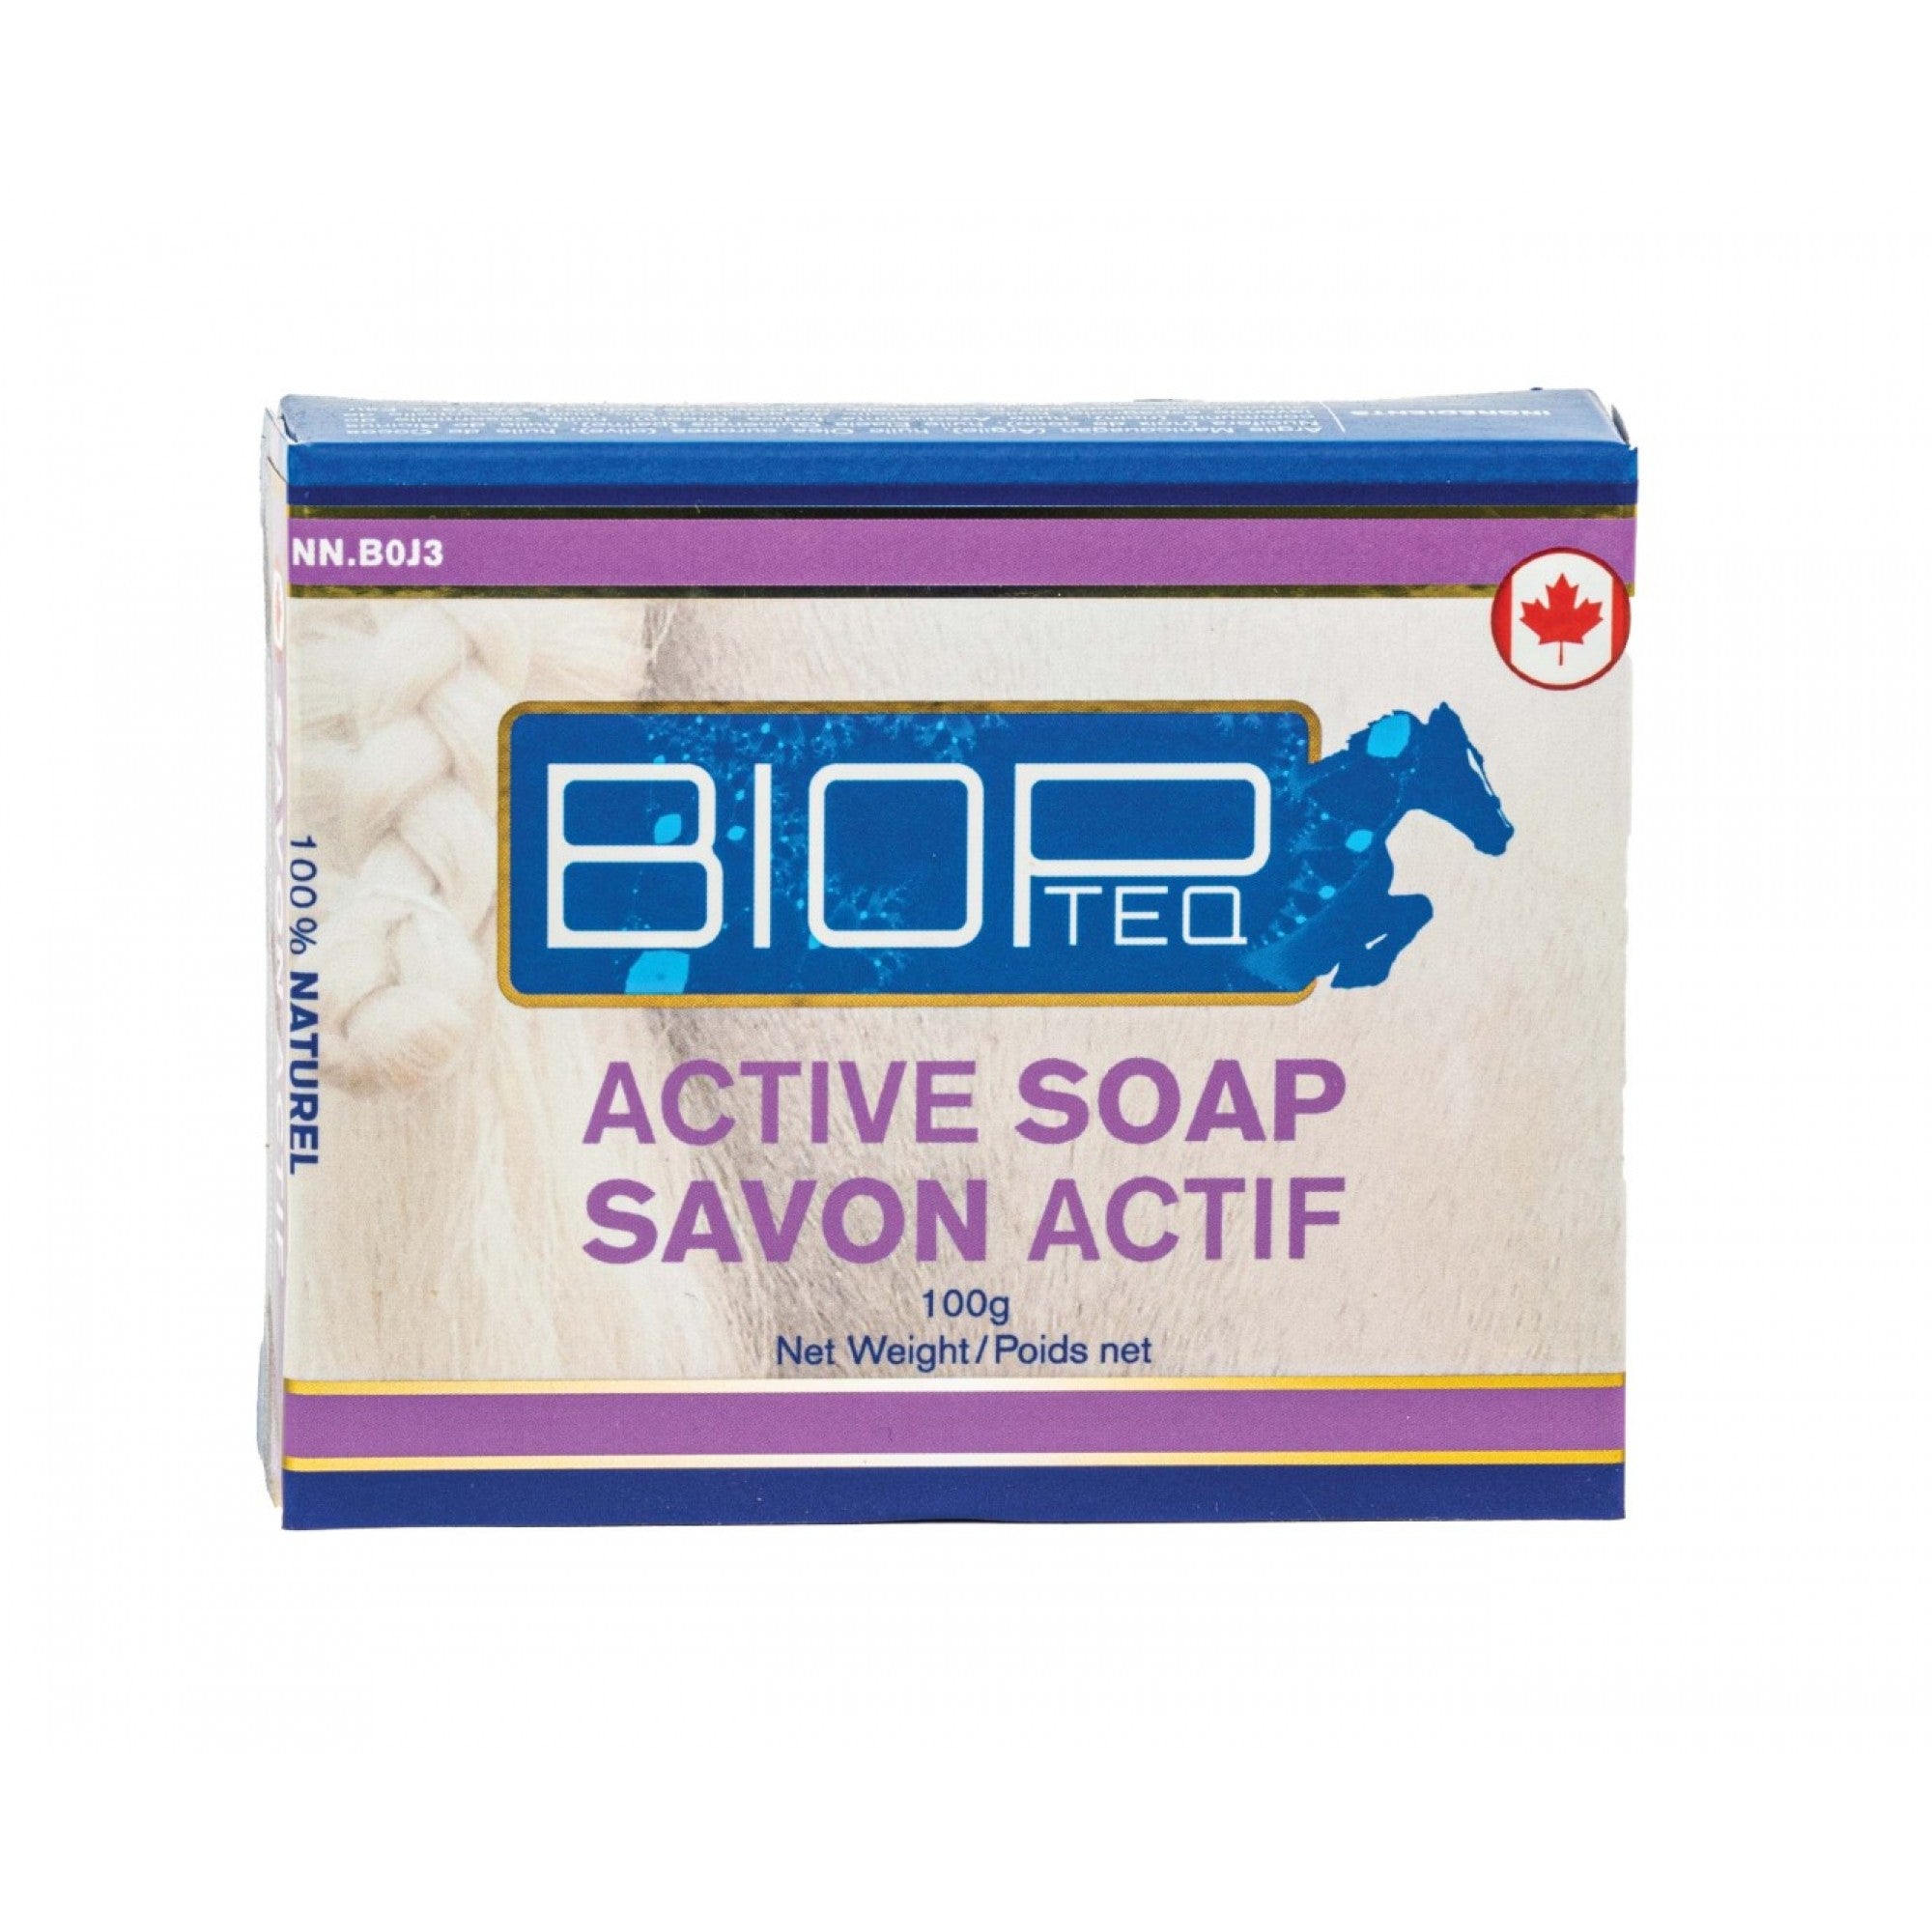 Savon actif - Biopteq 100g